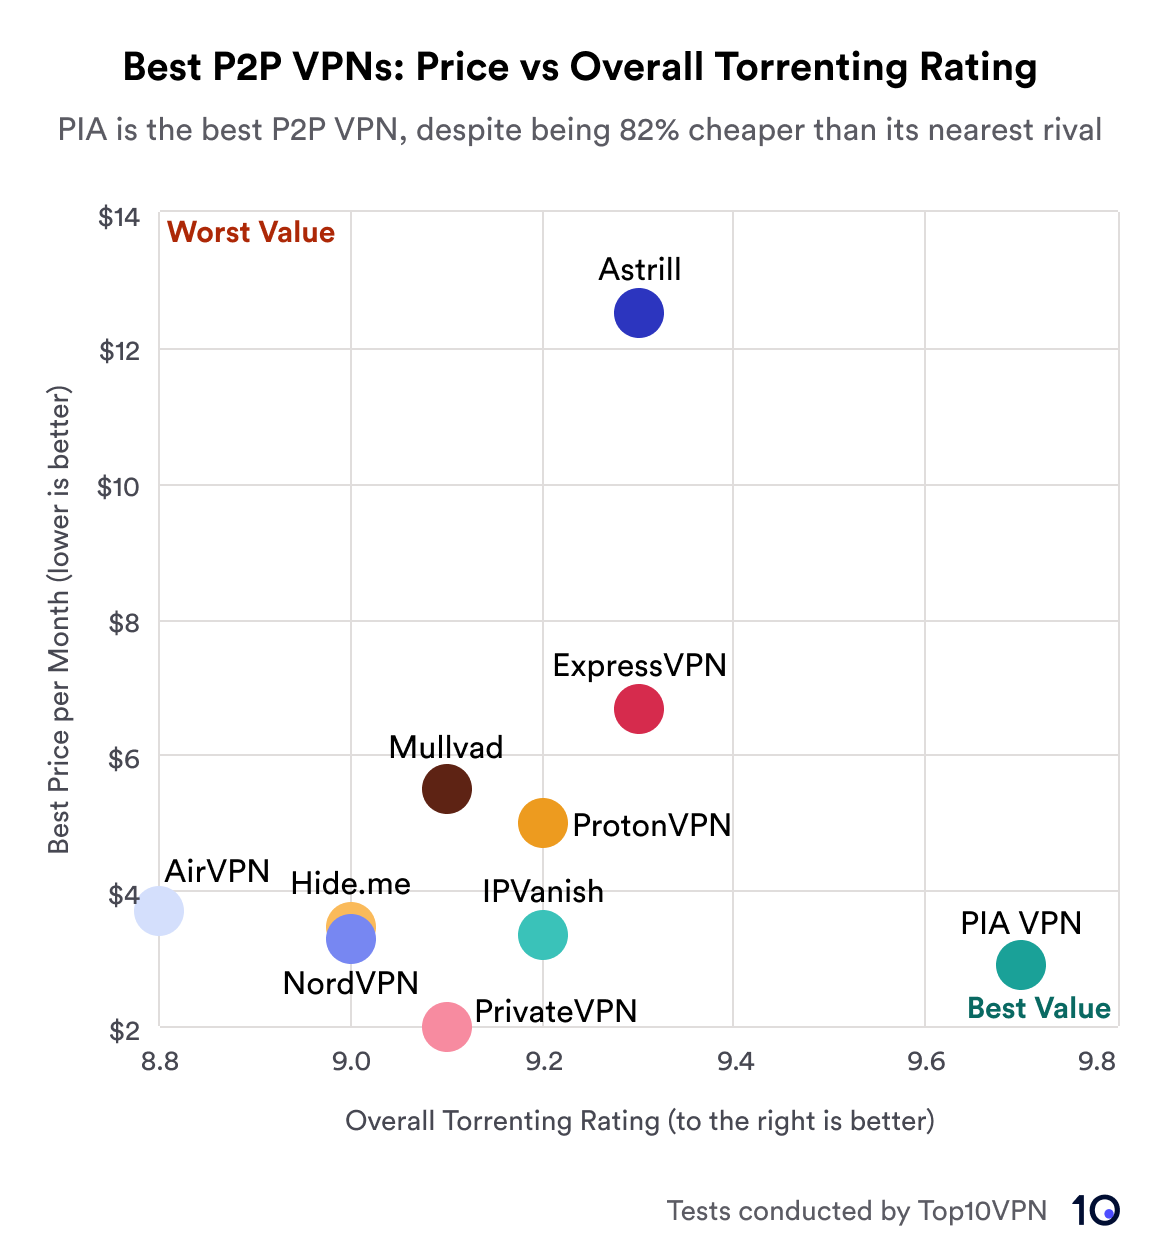 Streudiagramm zum Vergleich der besten Torrenting-VPNs nach Preis und Leistung